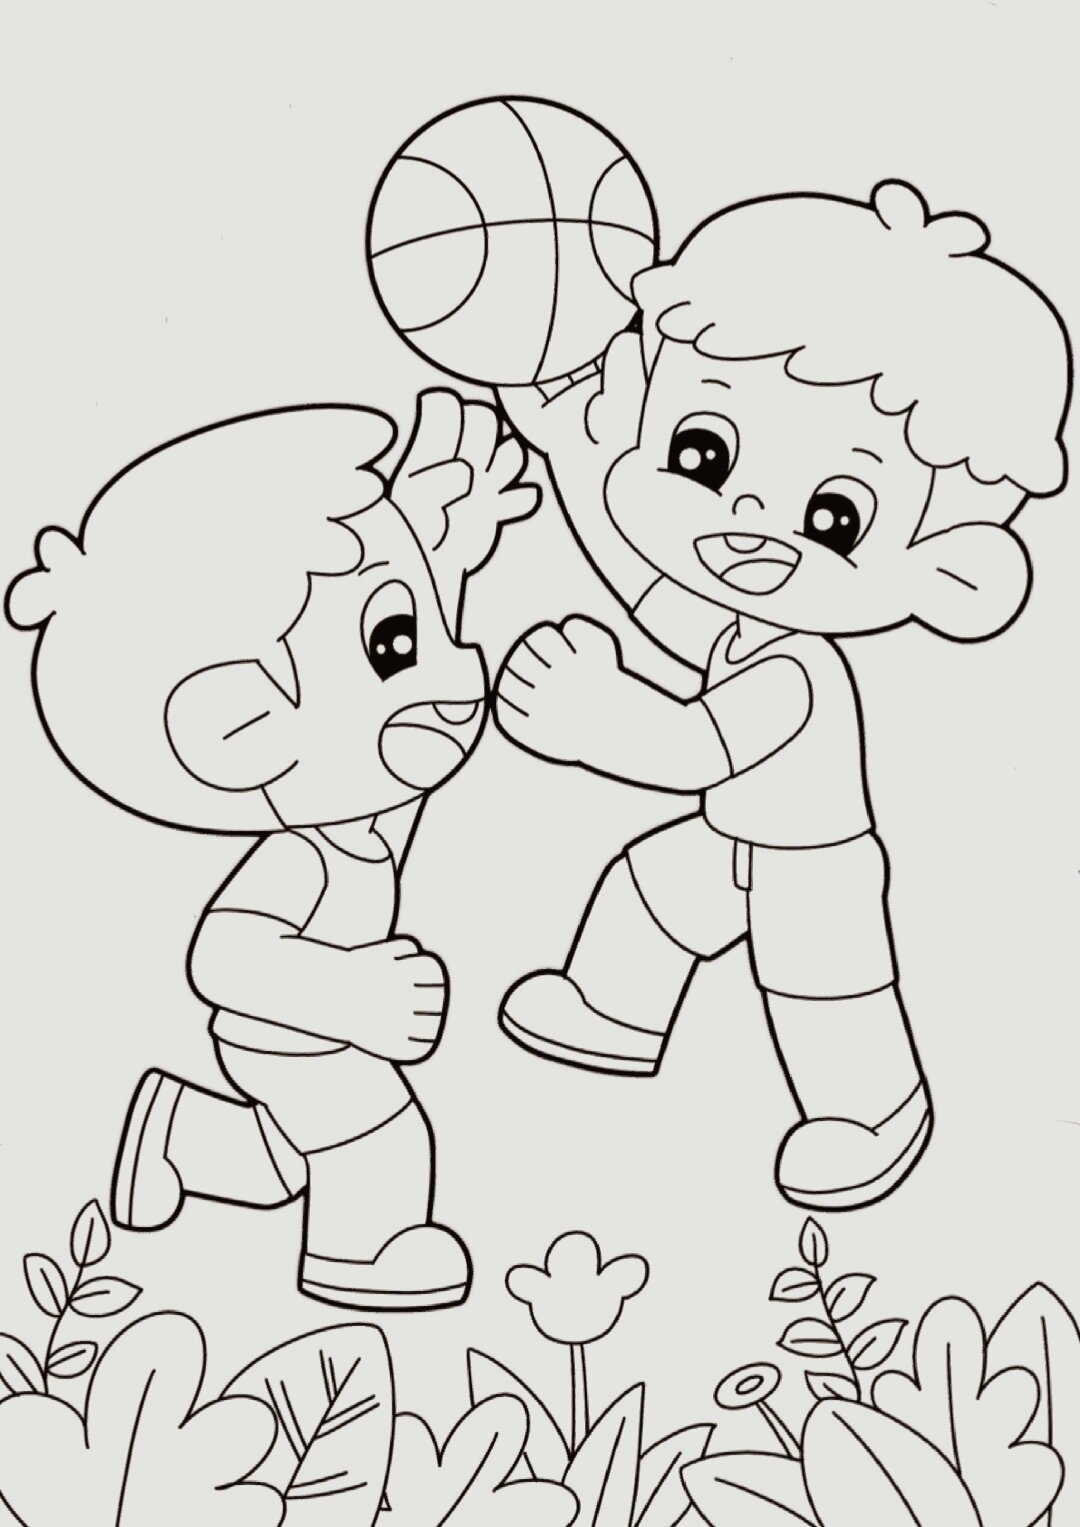 小孩打篮球怎么画简笔图片